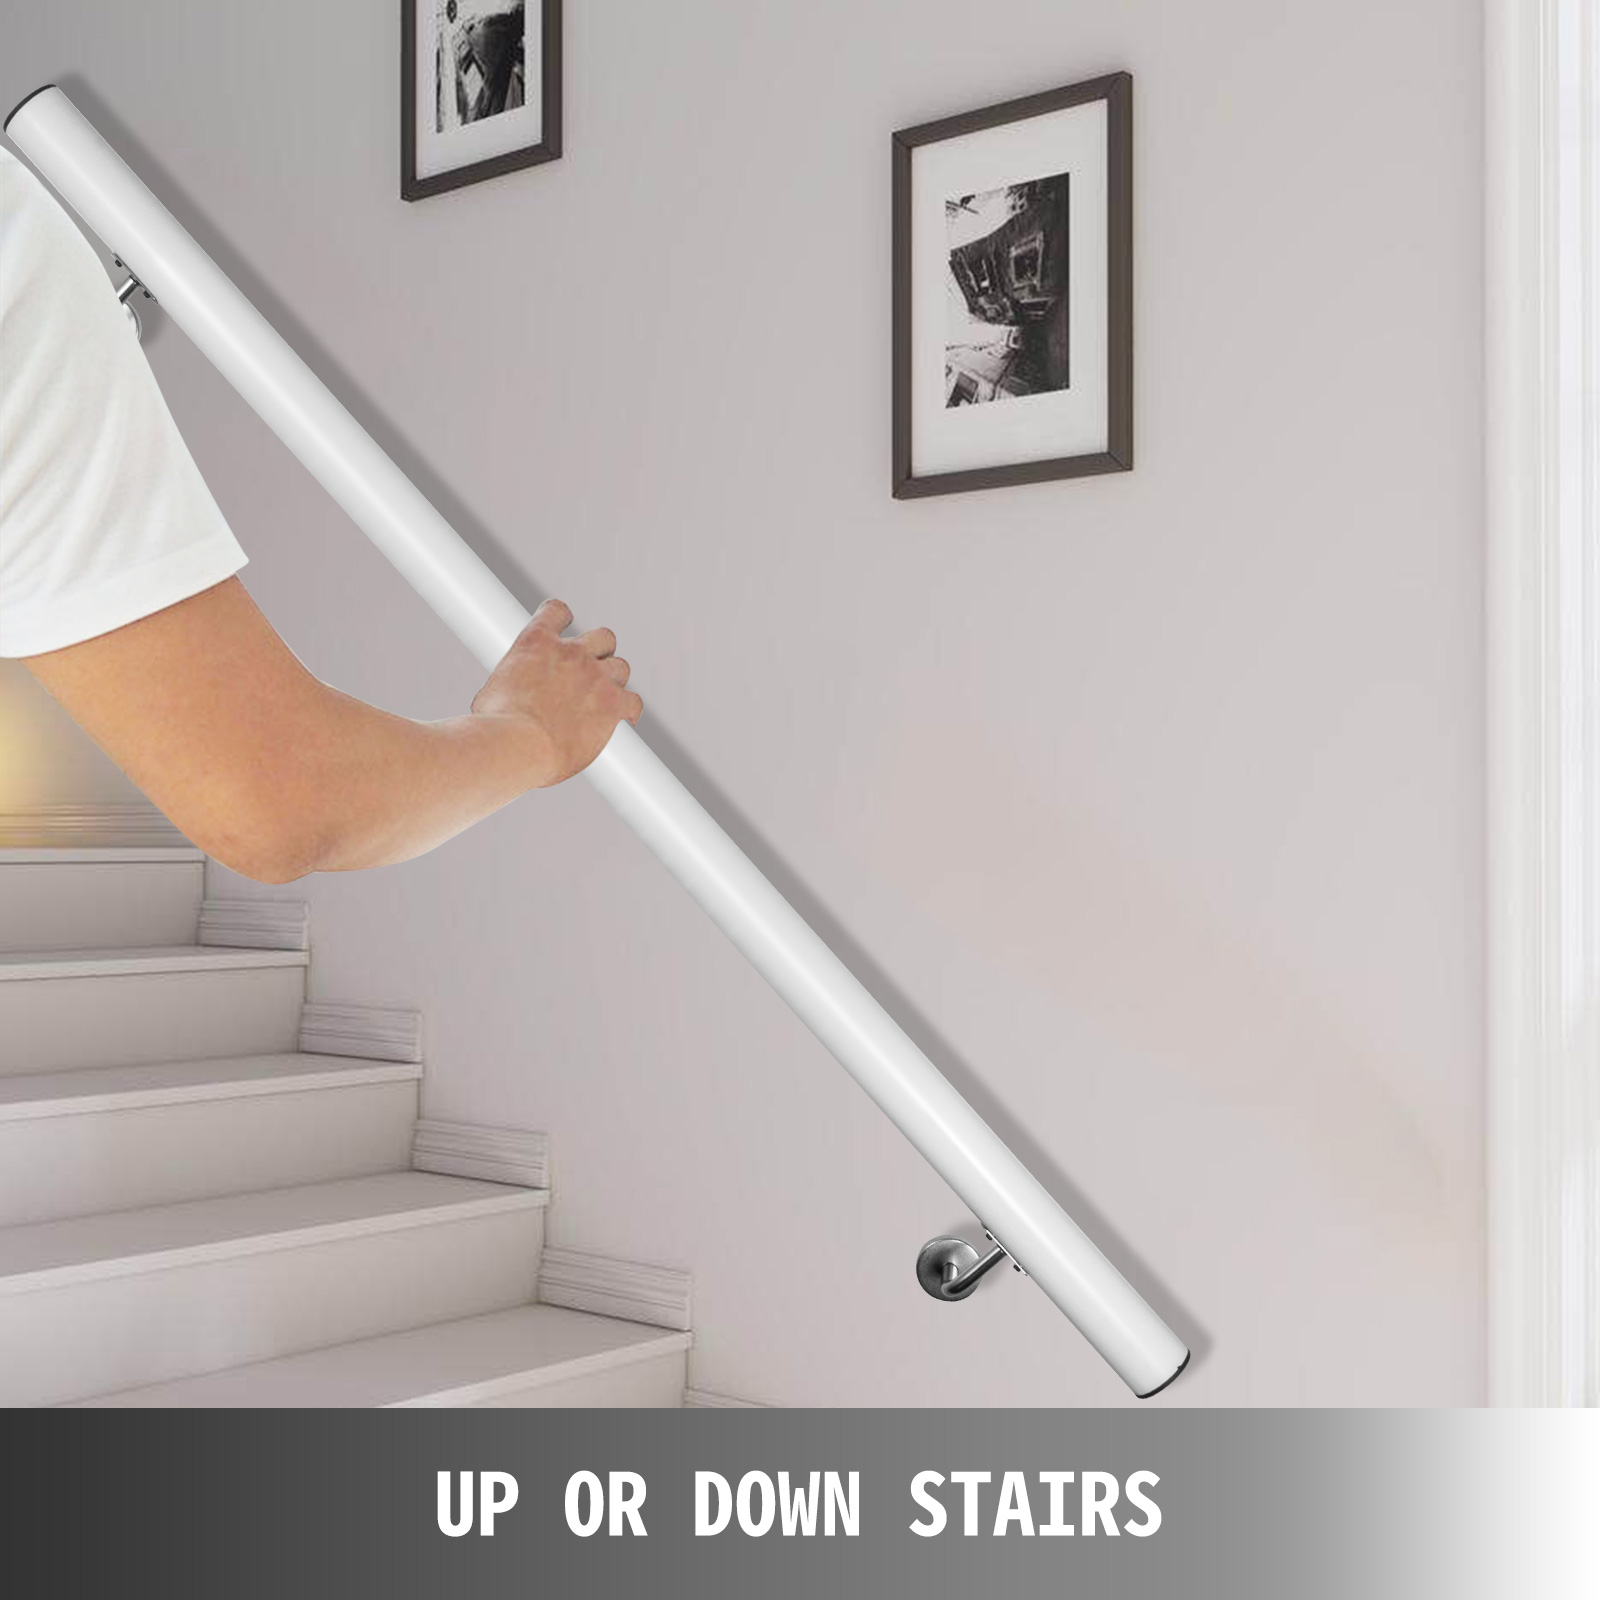 Stair Handrail,Aluminum Alloy,Indoor/Outdoor